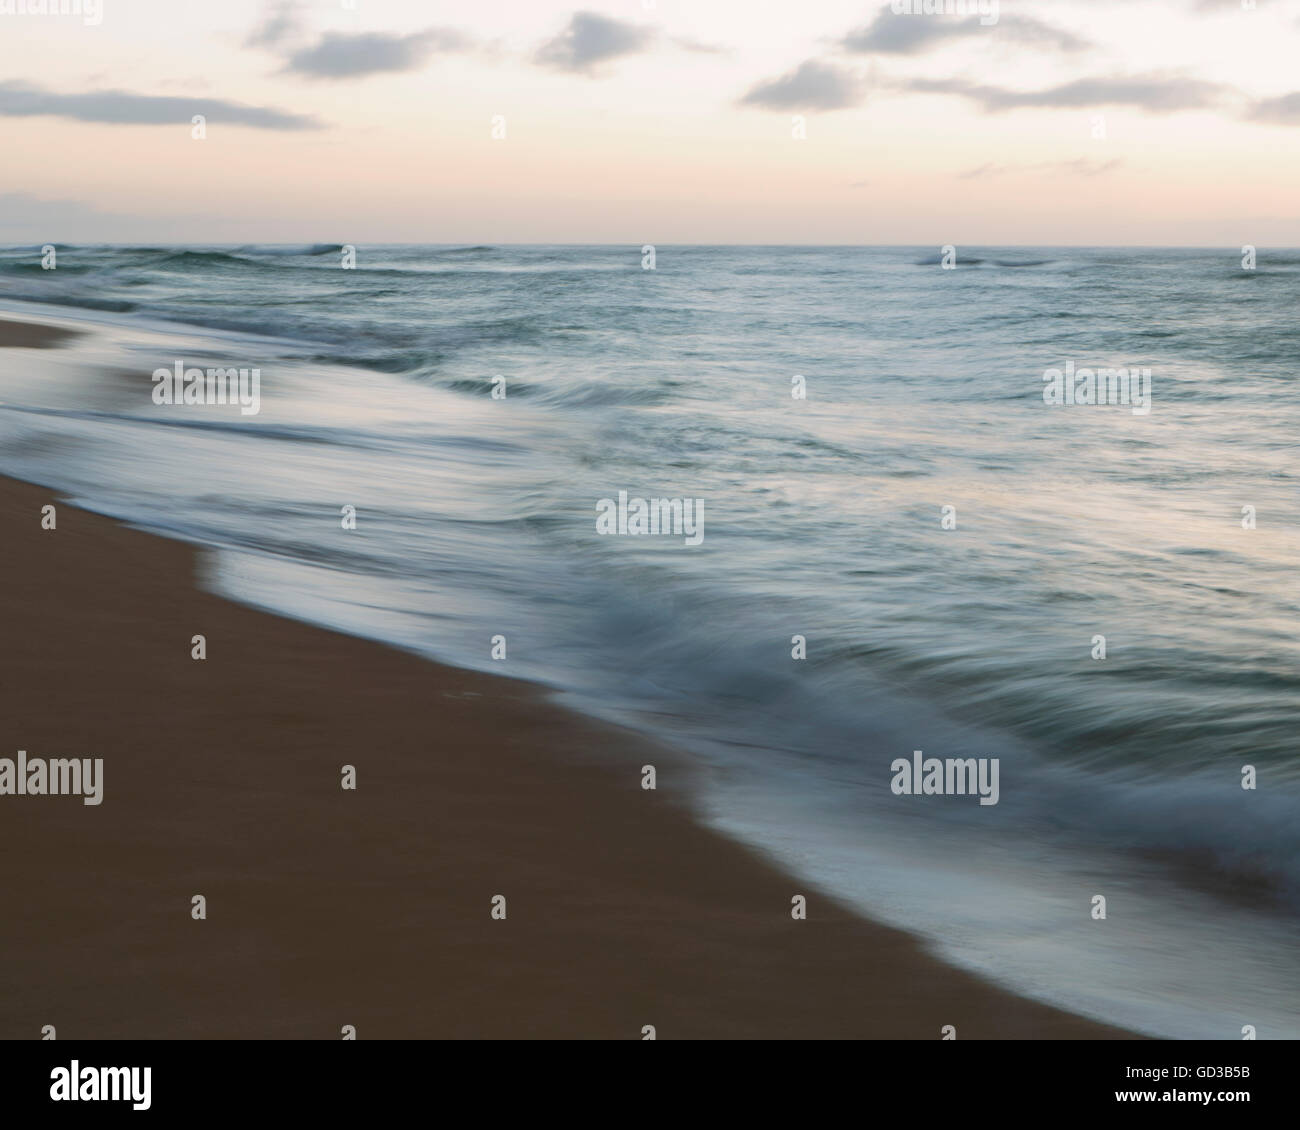 Seascape e onde che si infrangono sulla spiaggia al tramonto. Foto Stock